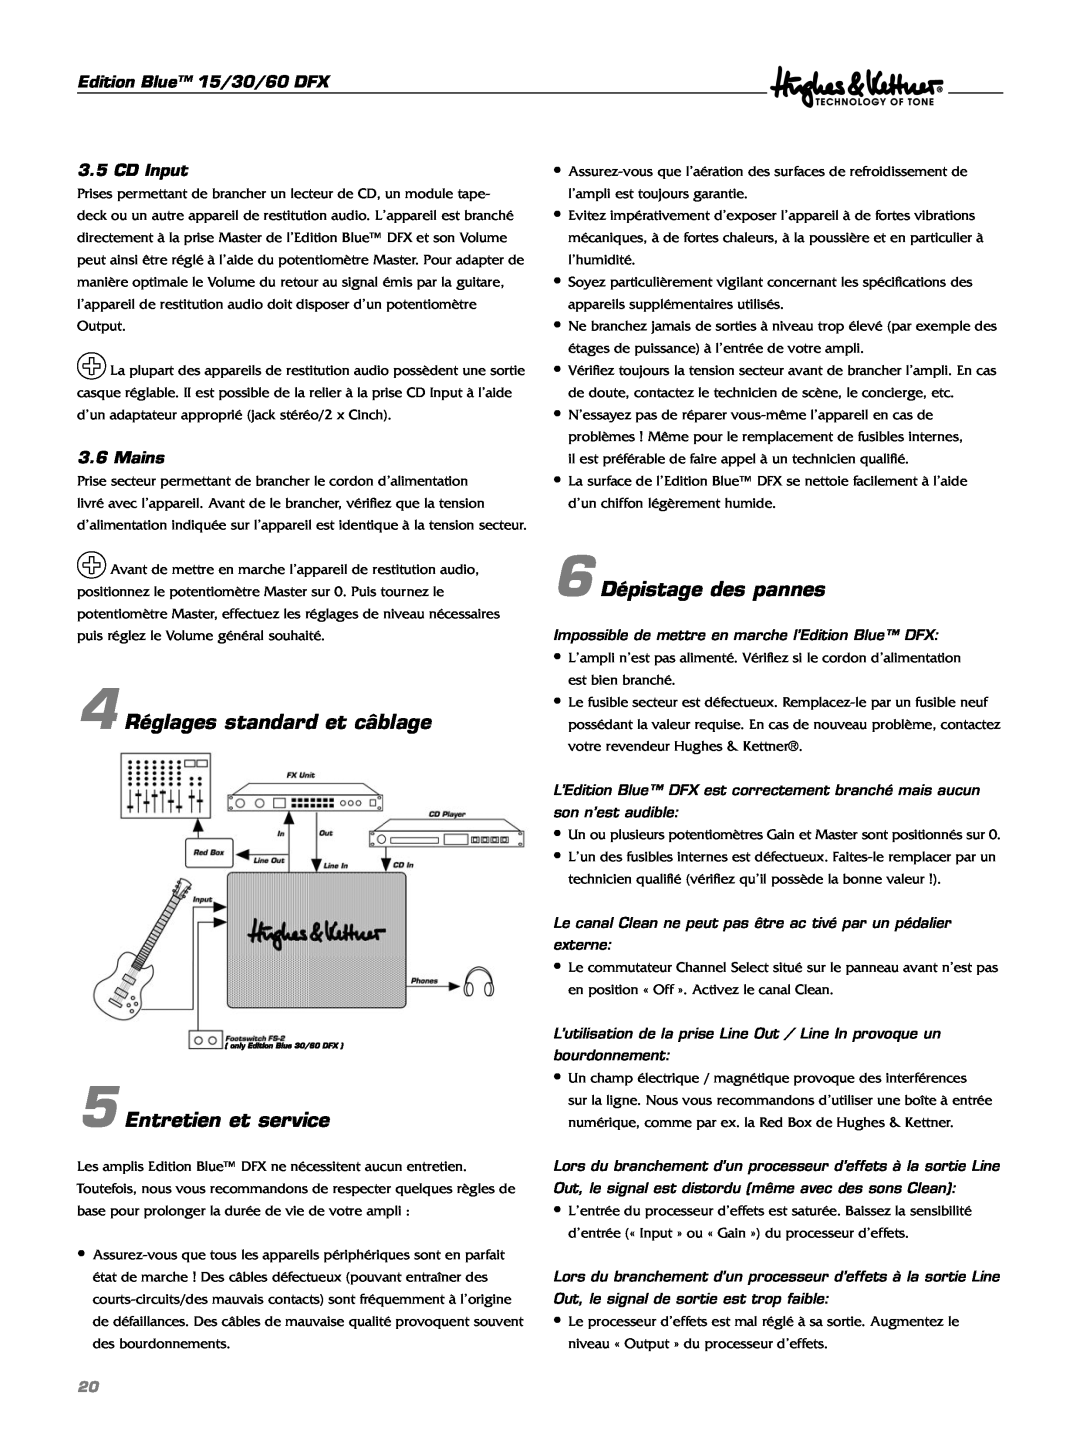 Hughes & Kettner DFX manual 4 Réglages standard et câblage, Entretien et service, 6 Dépistage des pannes 